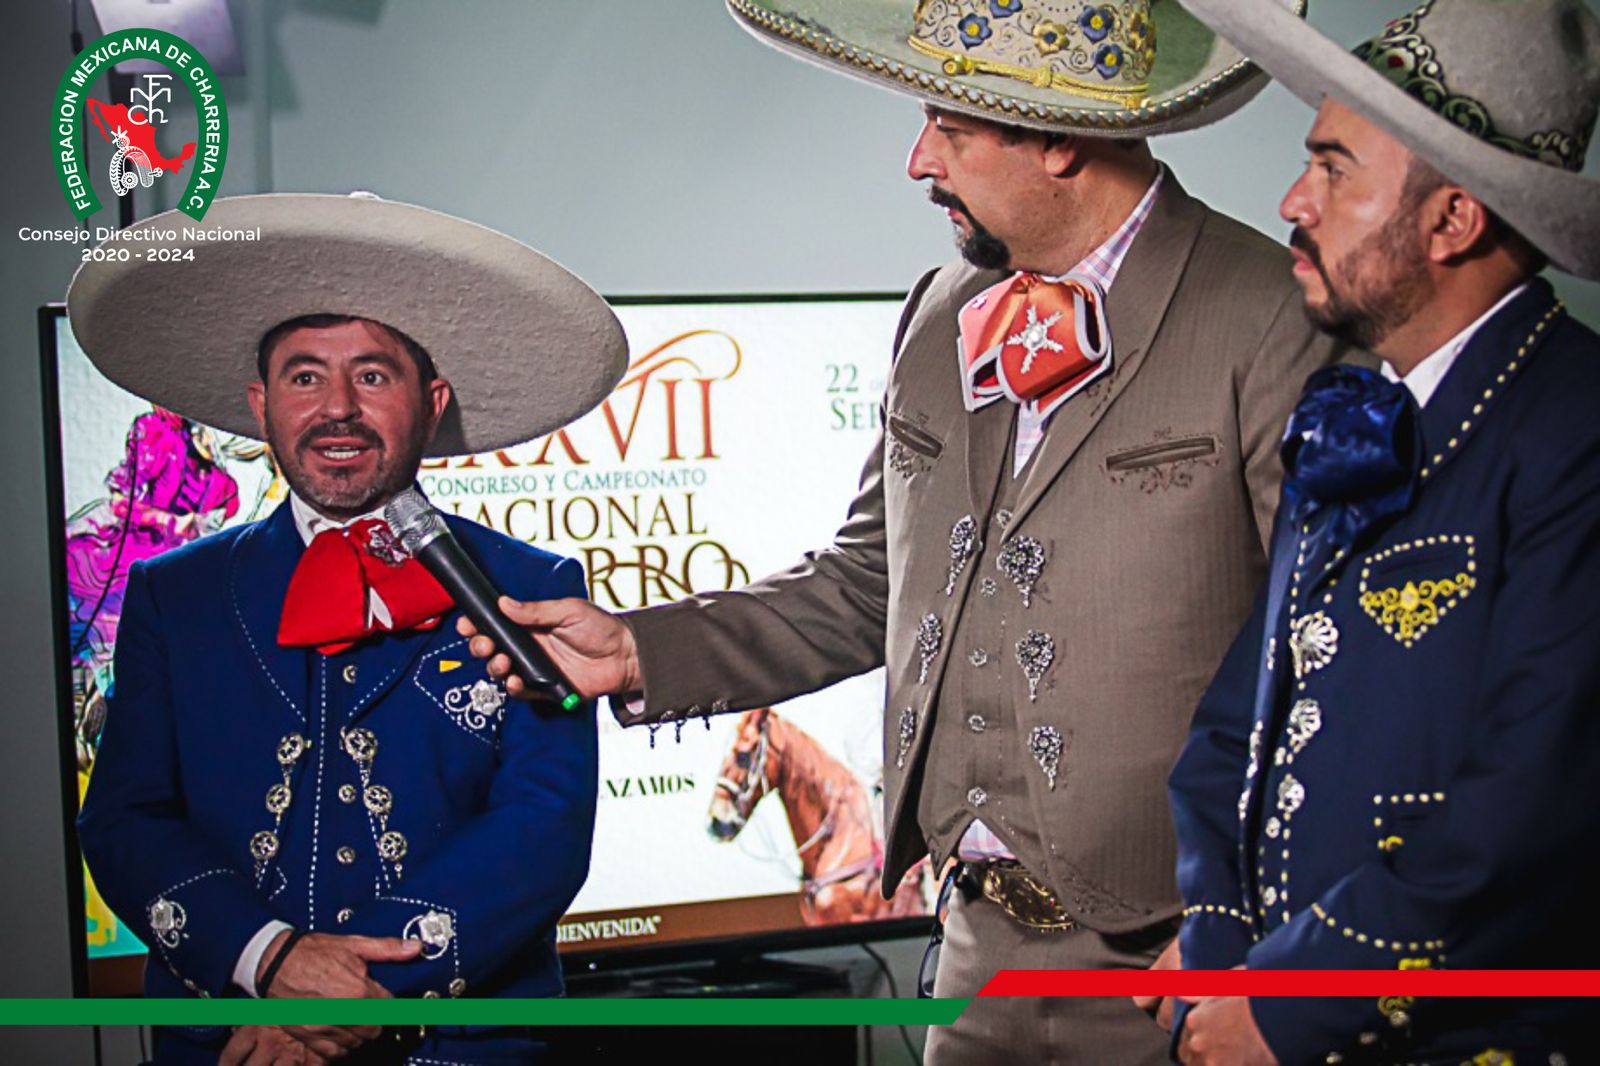 Jorge López Secretario de Turismo del Estado de Aguascalientes hace atenta invitación a asistit y disfrutar el LXXVII Congreso Nacional Aguascalientes 2021